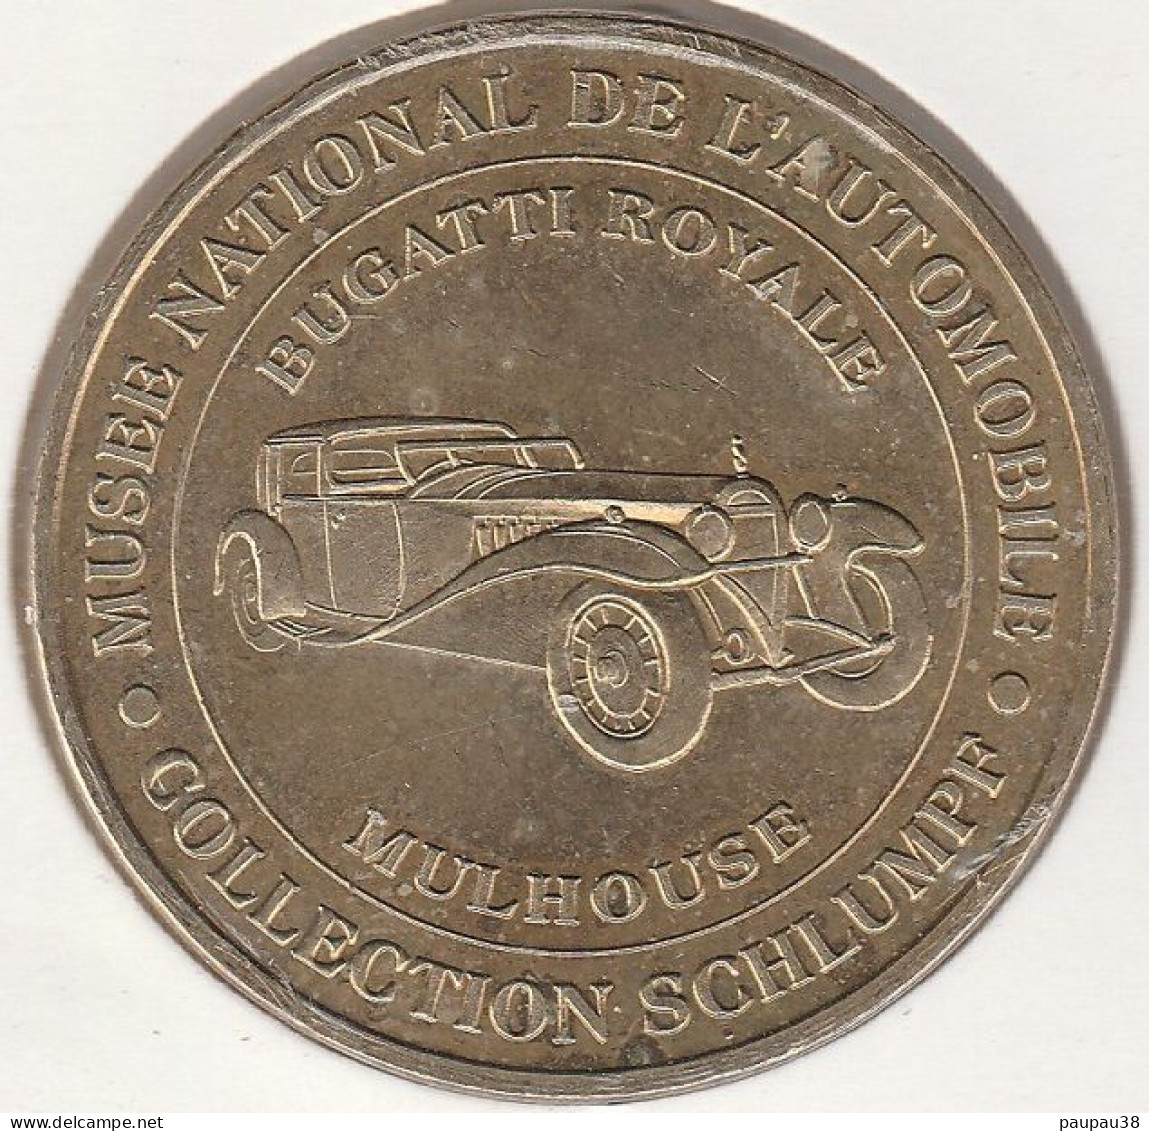 MONNAIE DE PARIS 2005 - 68 MULHOUSE Collection Schlumpf - Bugatti Royale Musée National - 2005